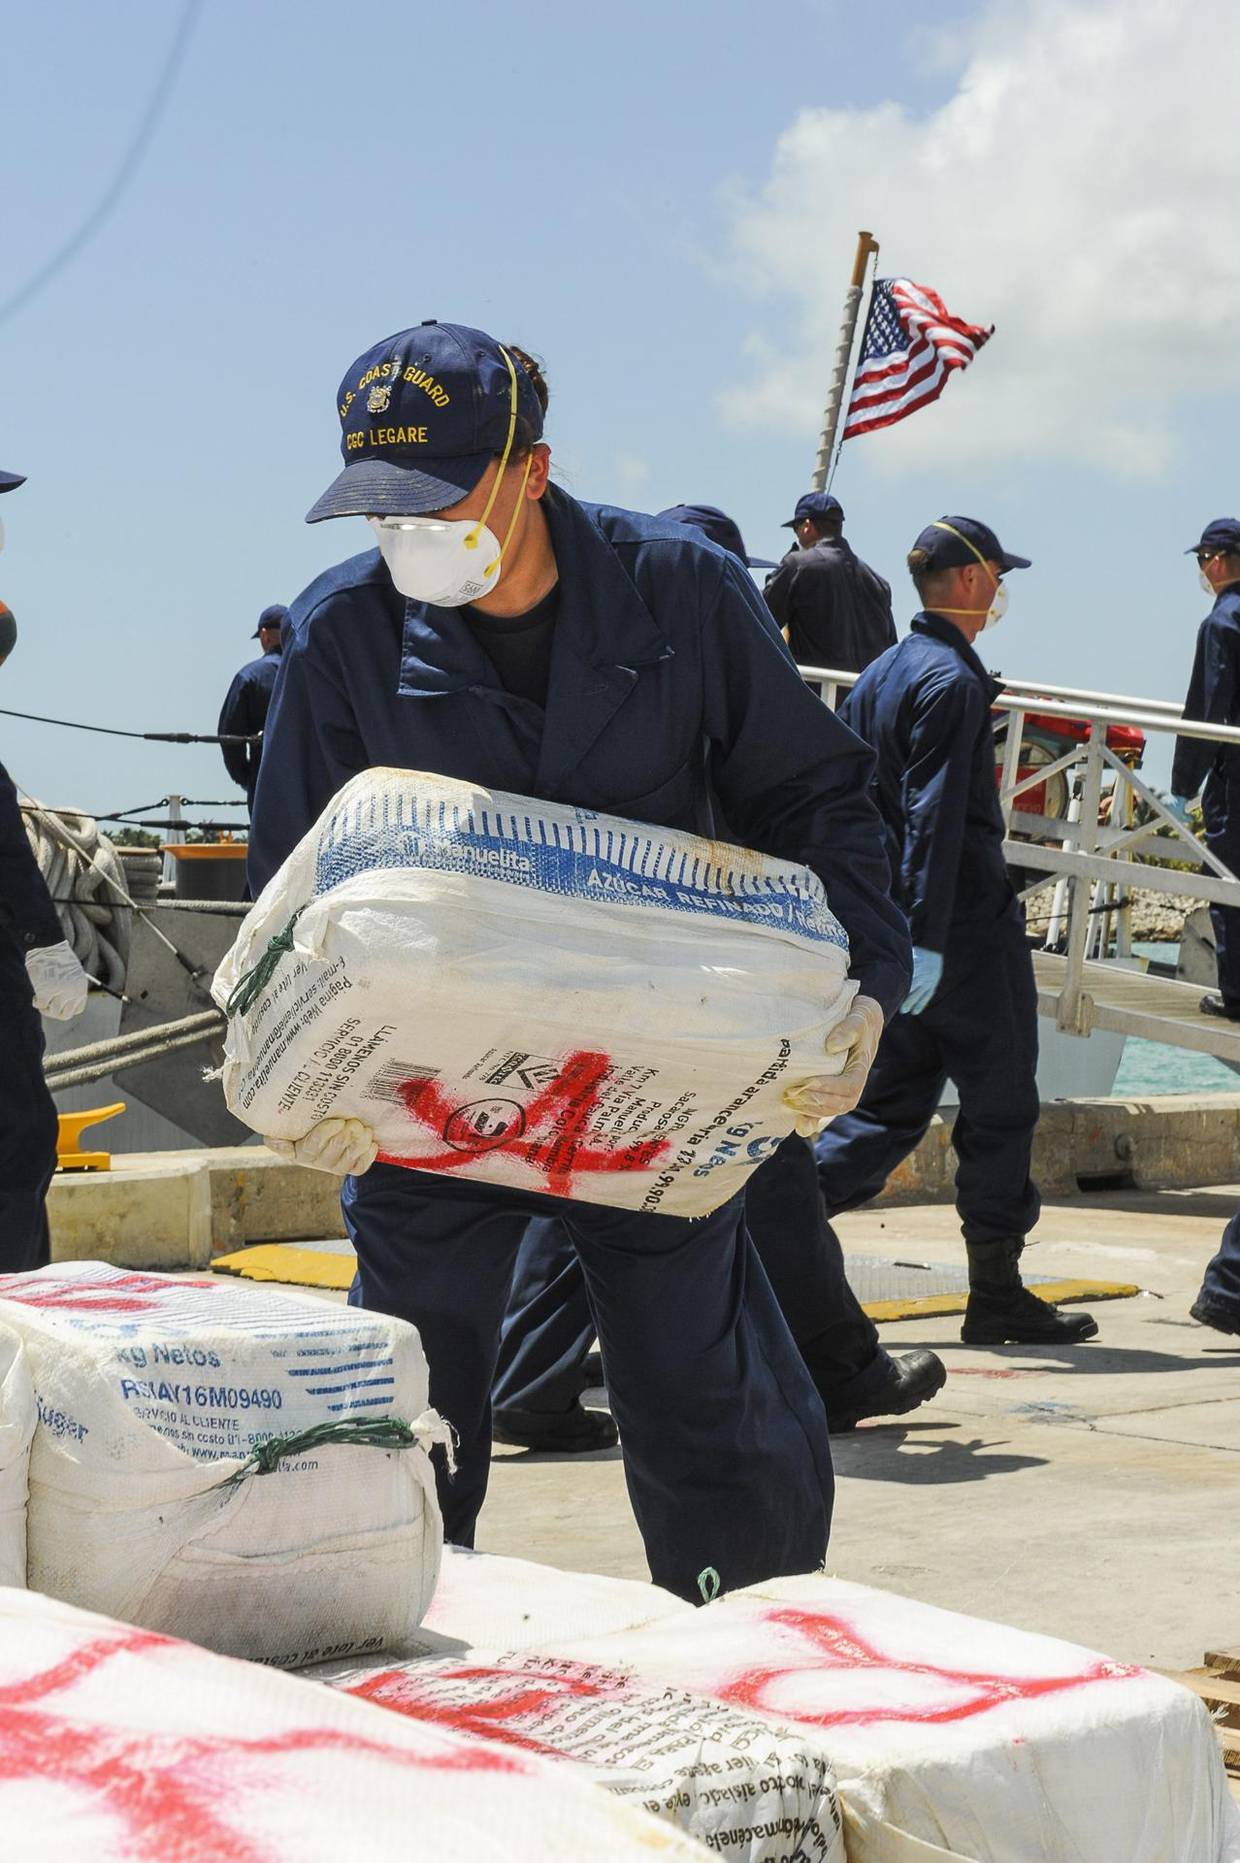 Fotografía de archivo cedida por la Guardia Costera de EE.UU. de un miembro de la tripulación del guarda costas Cutter Legare cargando cocaína decomizada en la base de la guardia costera en Miami, Florida. FE/GUARDIA COSTERA DE EEUU/ARK BARNEY